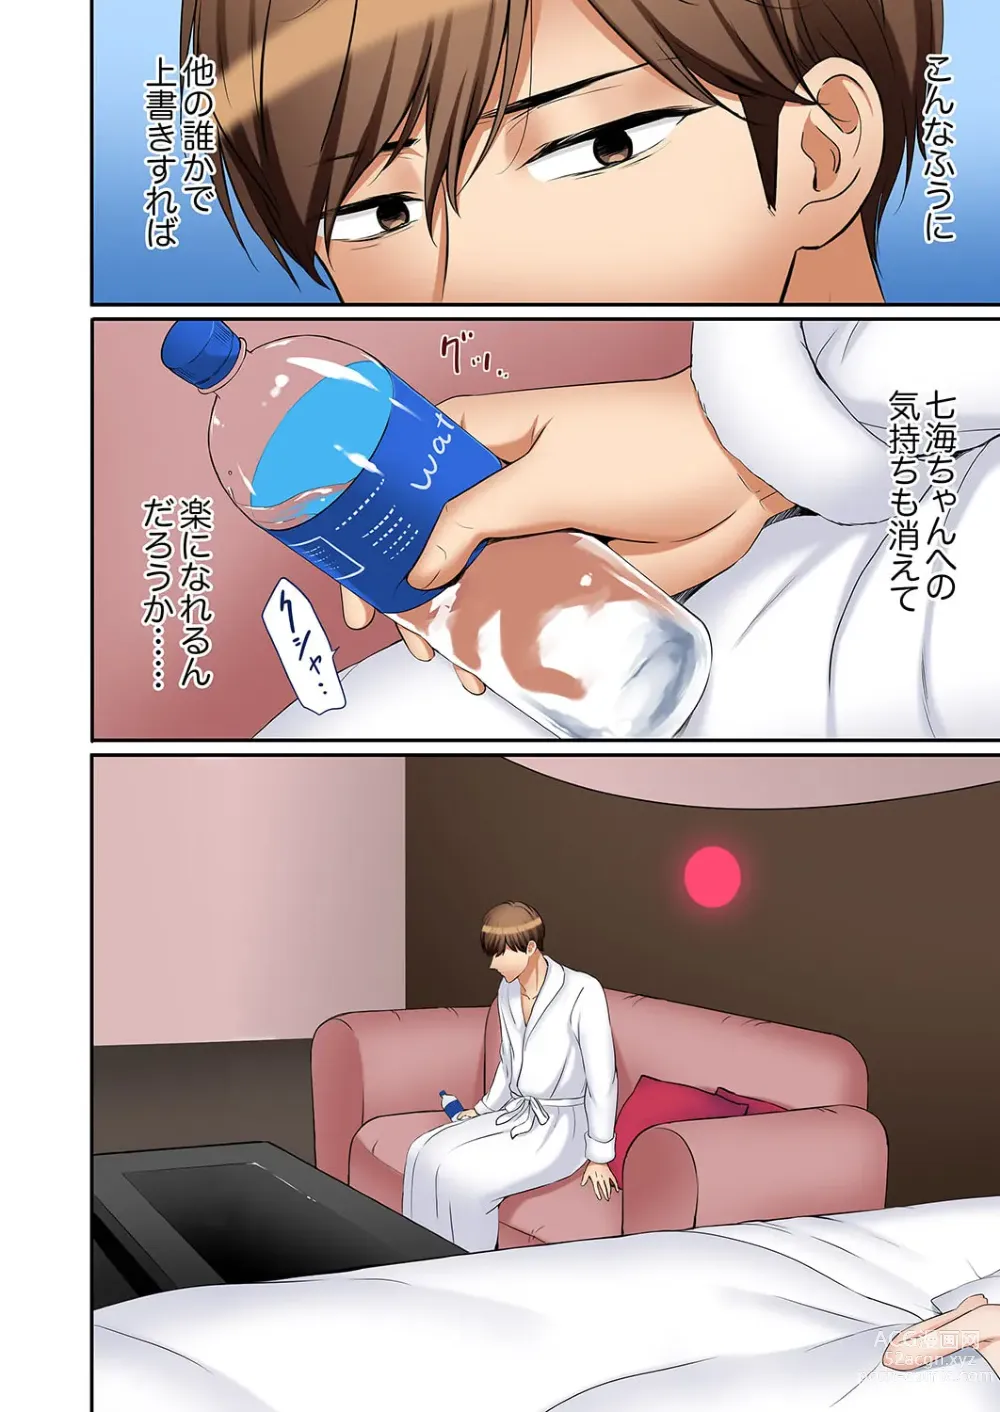 Page 26 of manga Ato 3-kai wa Ikeru yo ne?